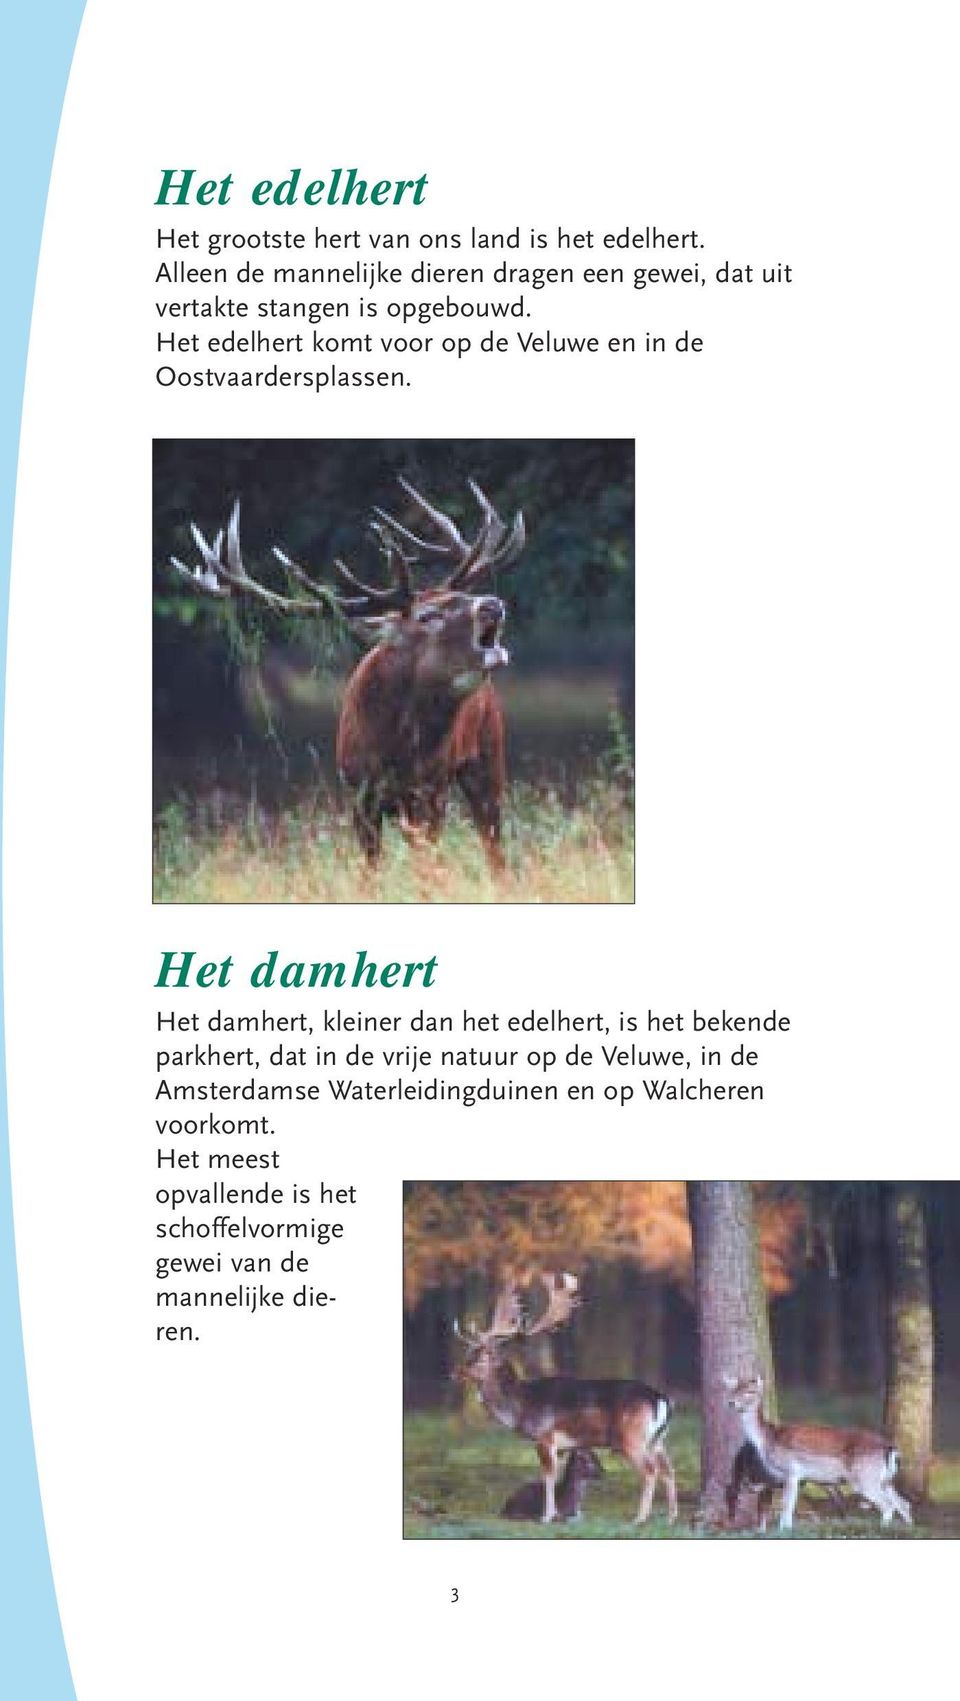 Het edelhert komt voor op de Veluwe en in de Oostvaardersplassen.